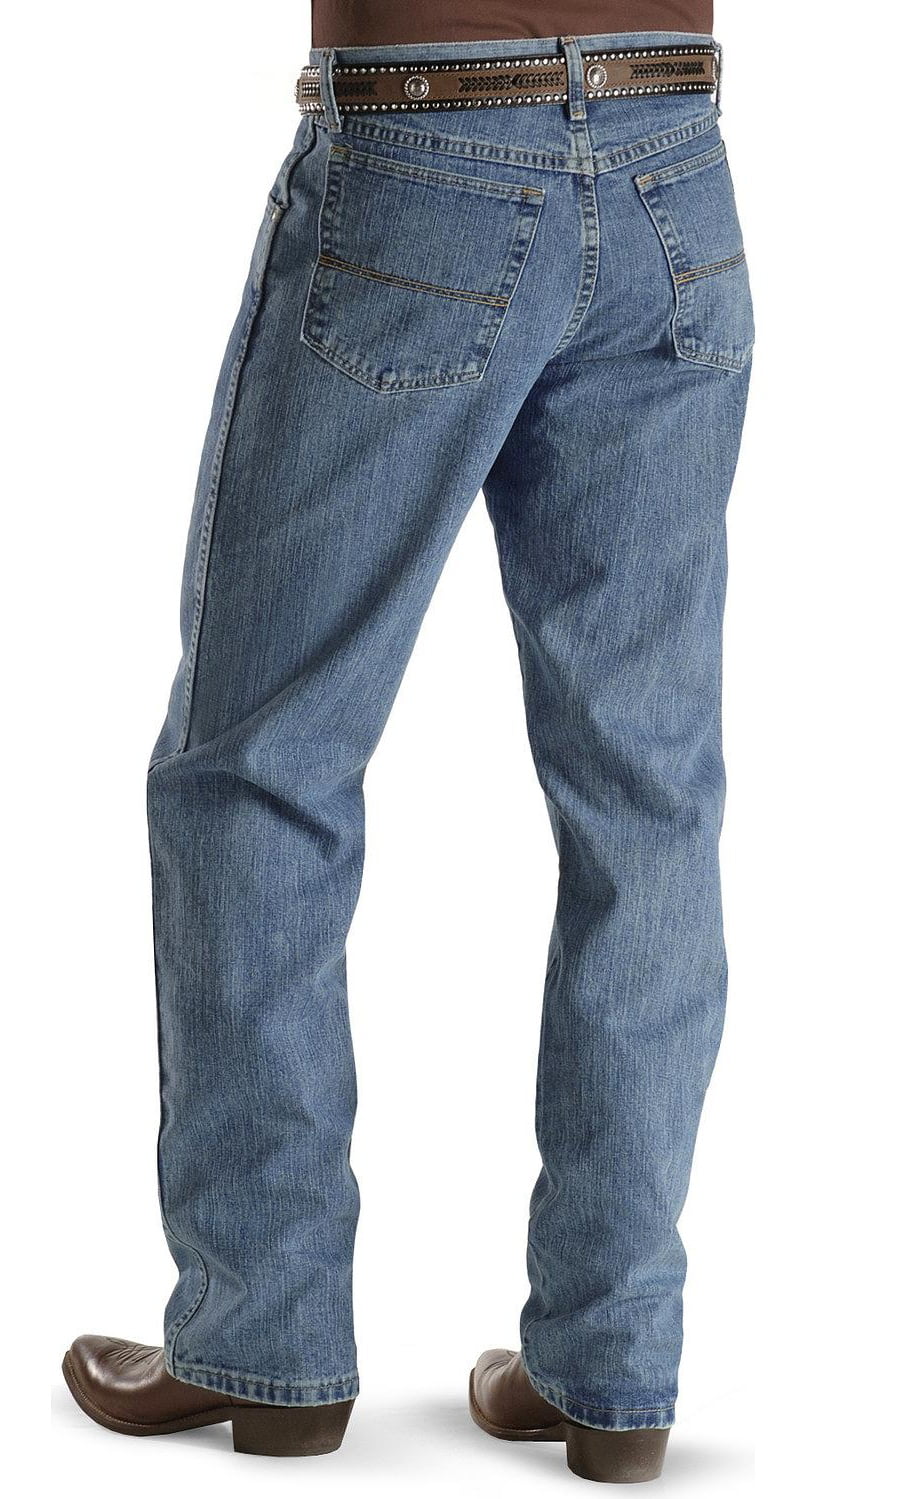 Wrangler - wrangler men's 20x jeans no. 23 relaxed fit - 23mwxvb_x8 ...